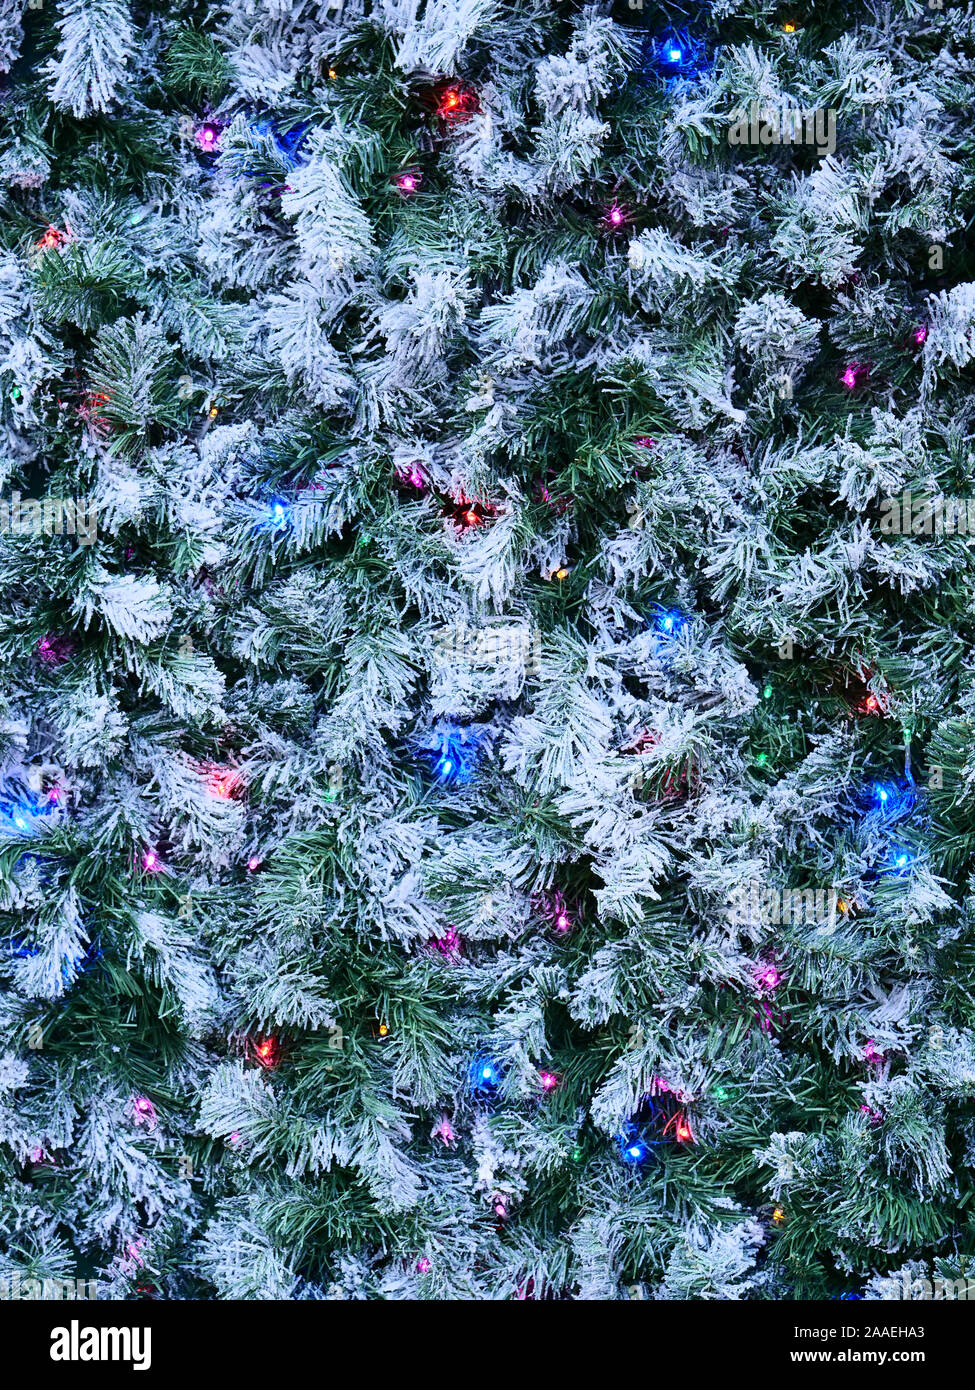 Decorazione di Natale con foglie di pino verde, neve bianca e luci blu, rosa e viola visto a Londra, Regno Unito alla fine di novembre 2019. Foto Stock